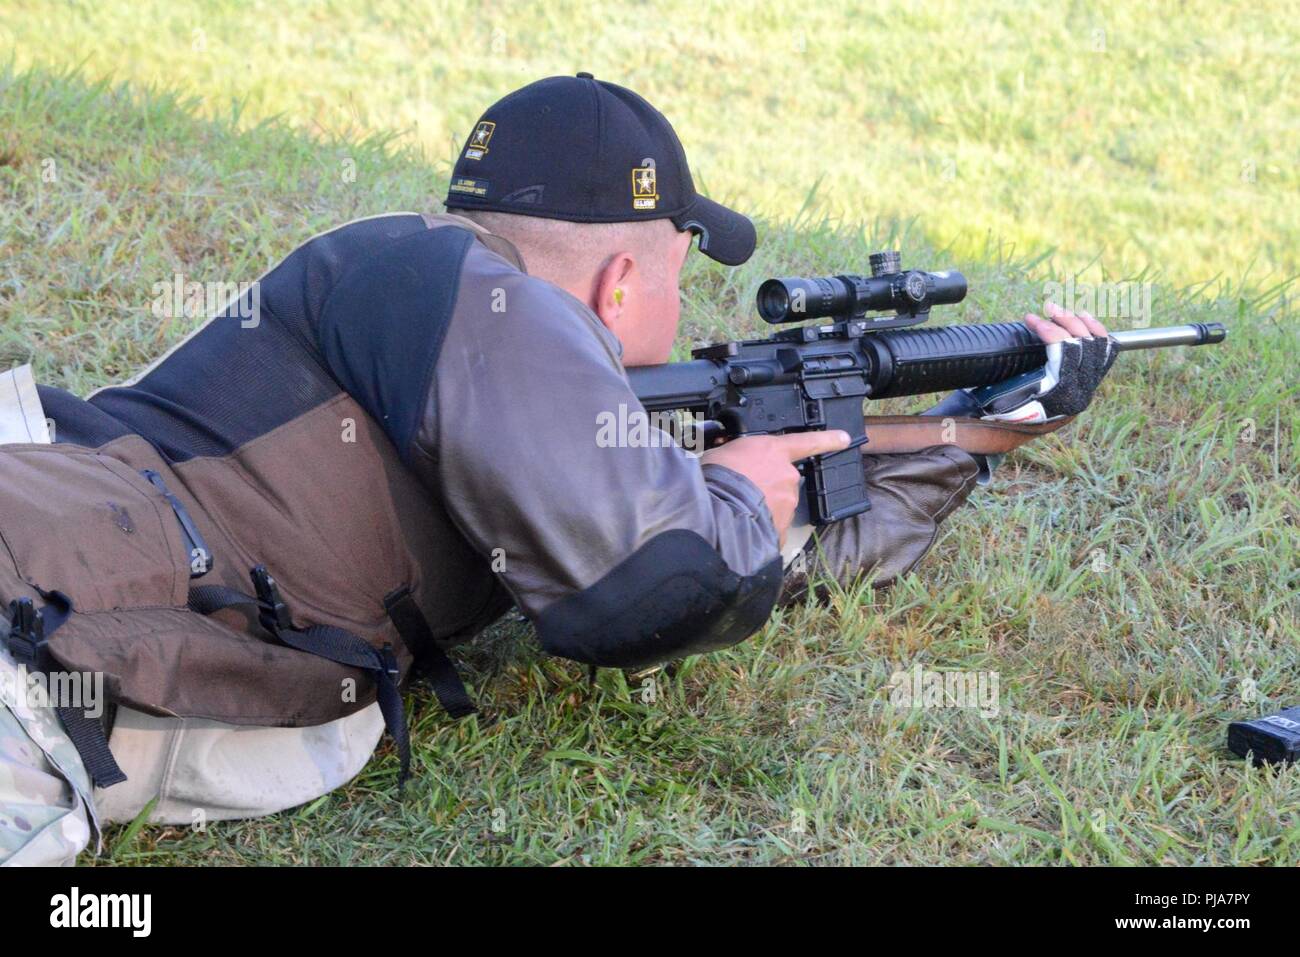 Quantico, Virginia - El ejército de los EE.UU. Unidad de puntería (USAMU)  Servicio equipo de fusil soldado Sgt. Lane Ichord, un nativo de Waterford,  Ca. se prepara a fuego downrange durante el